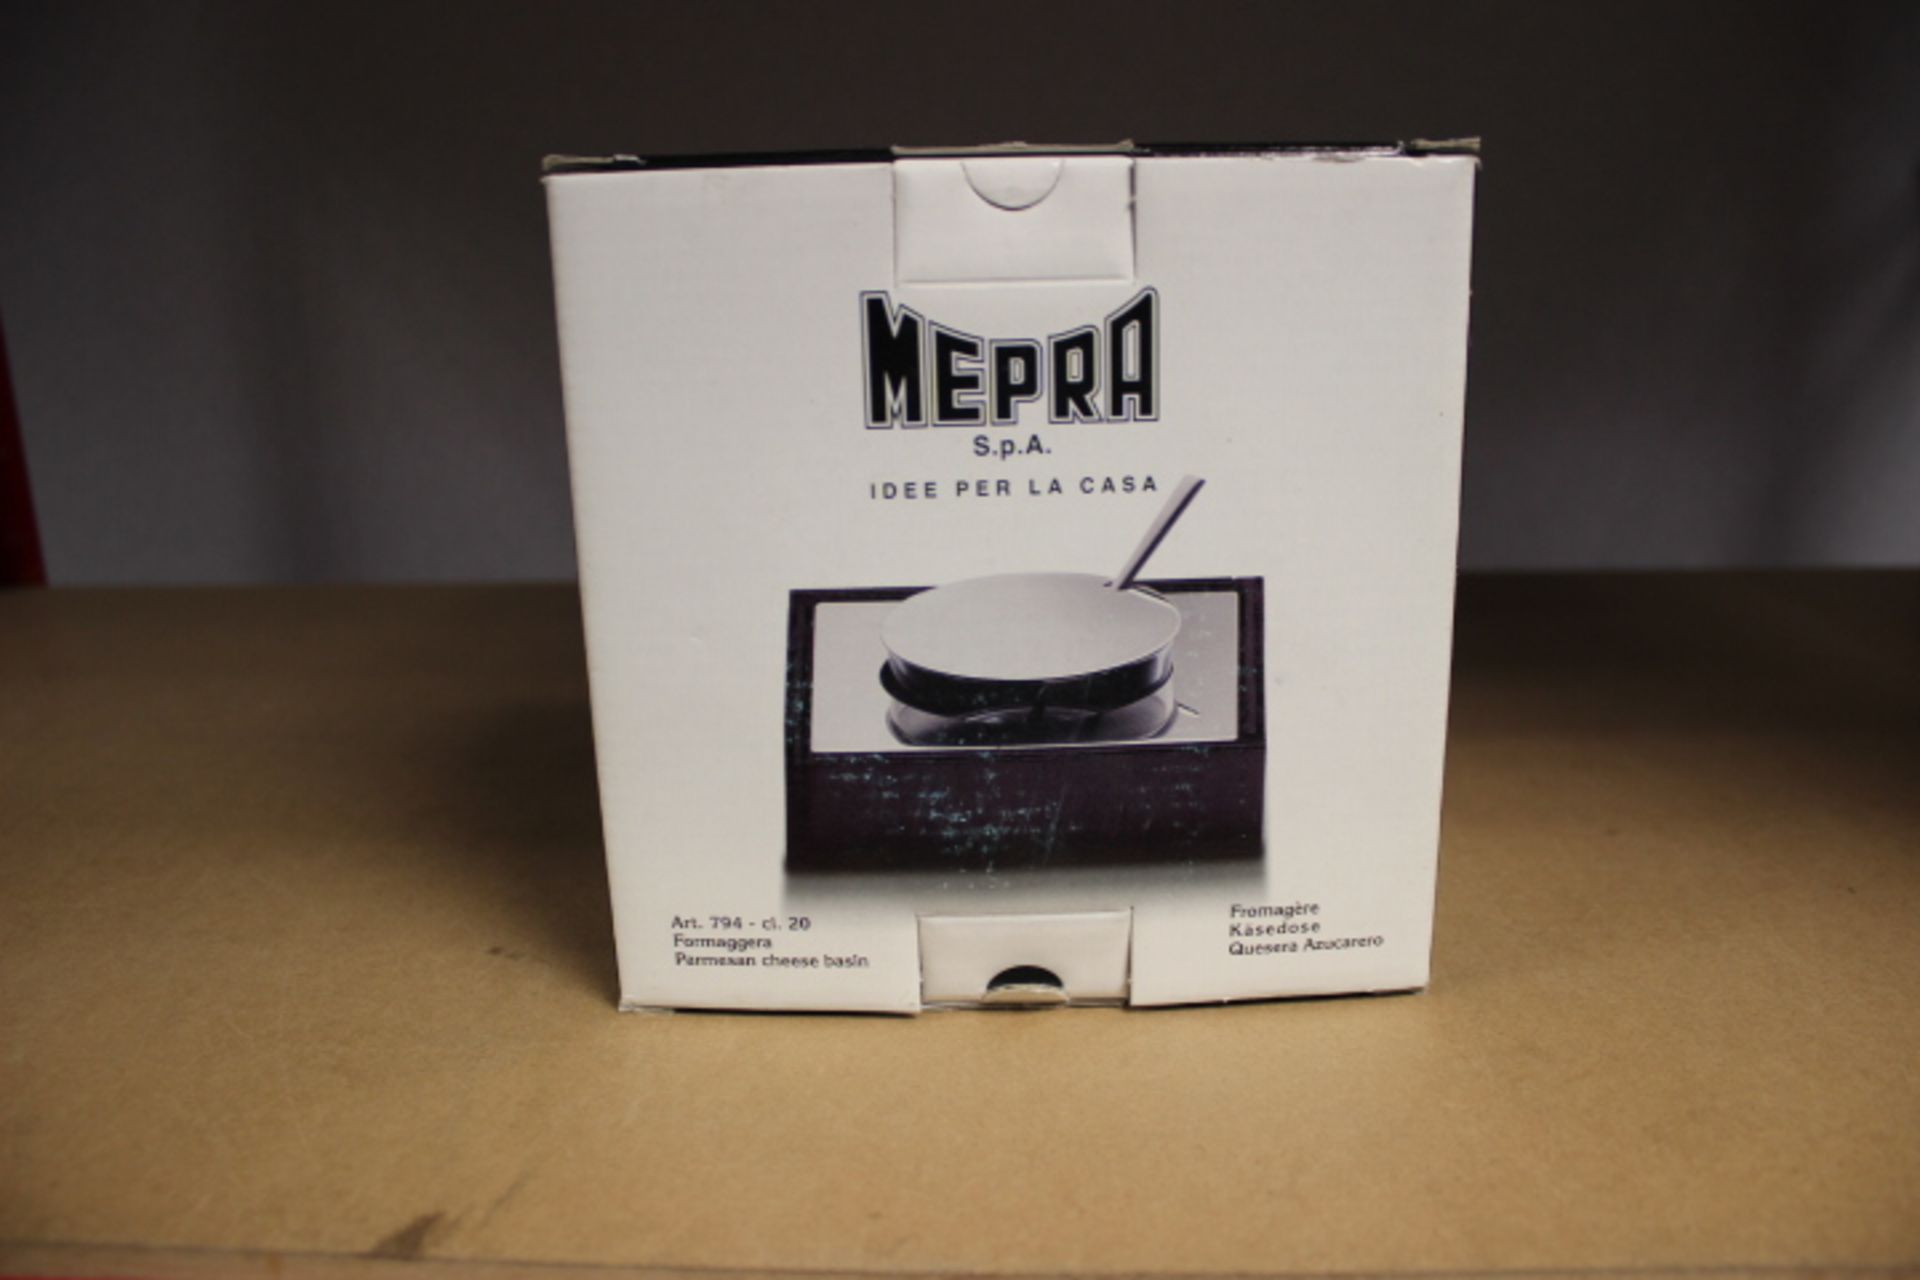 Mepra Stainless Steel Parmesan Cheese Basin, Wenge